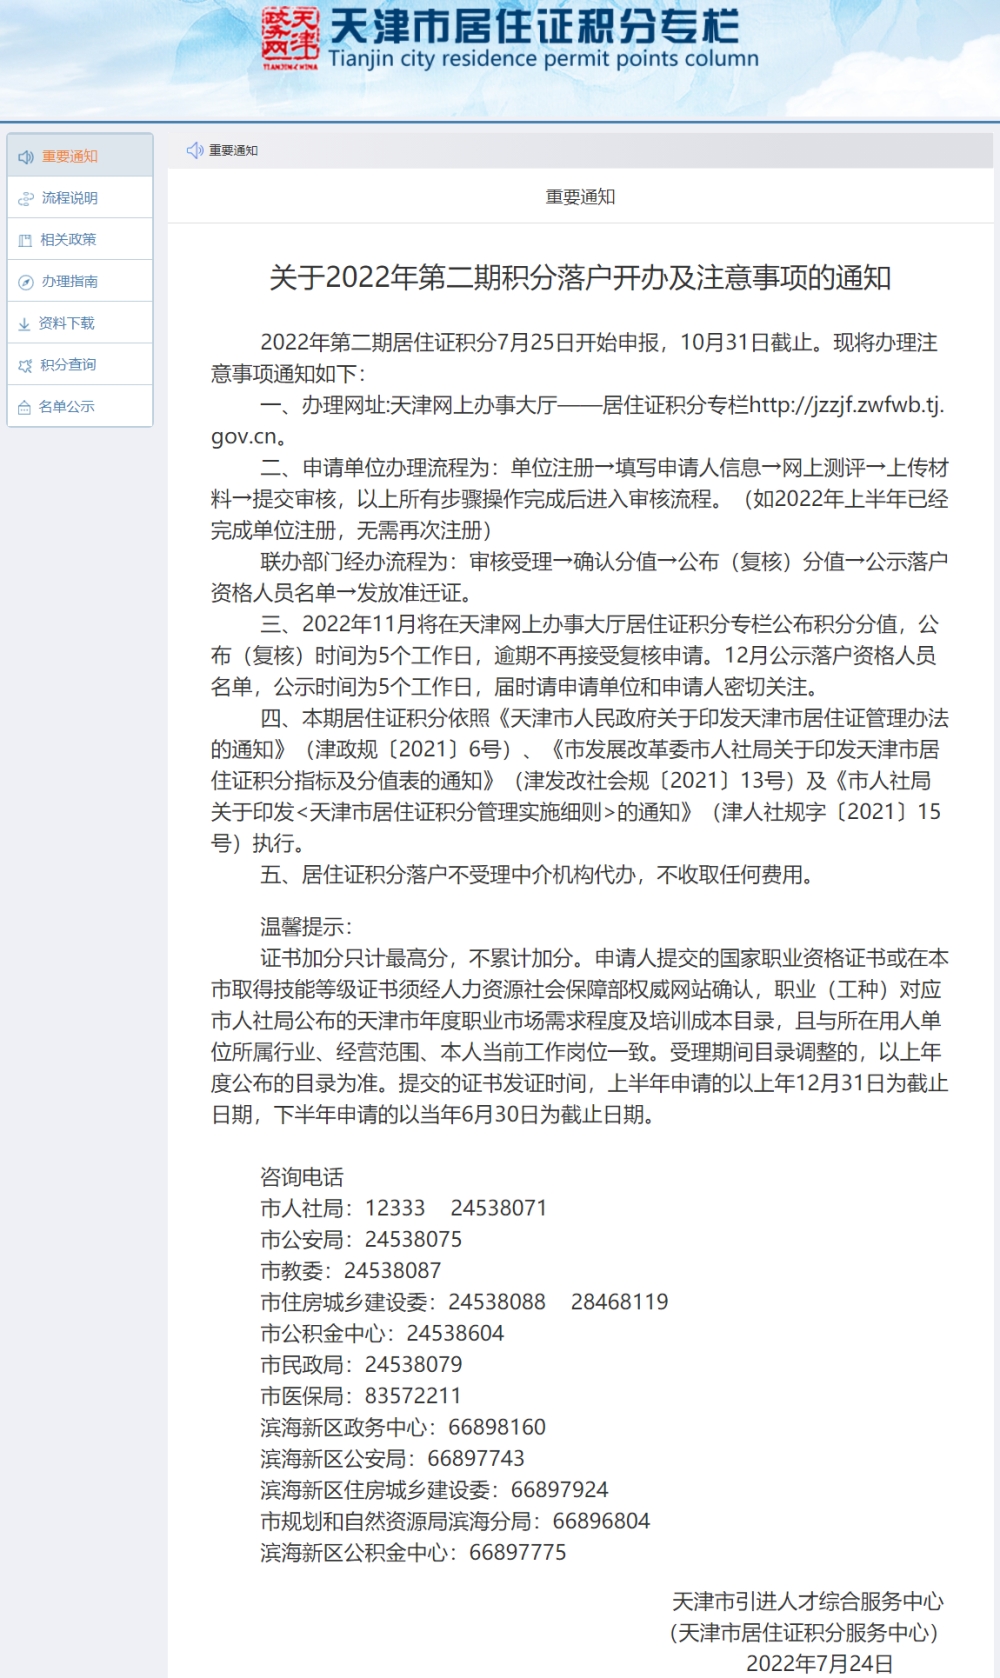 1月28号 软考认证周末名师分享会-上海站-居转户